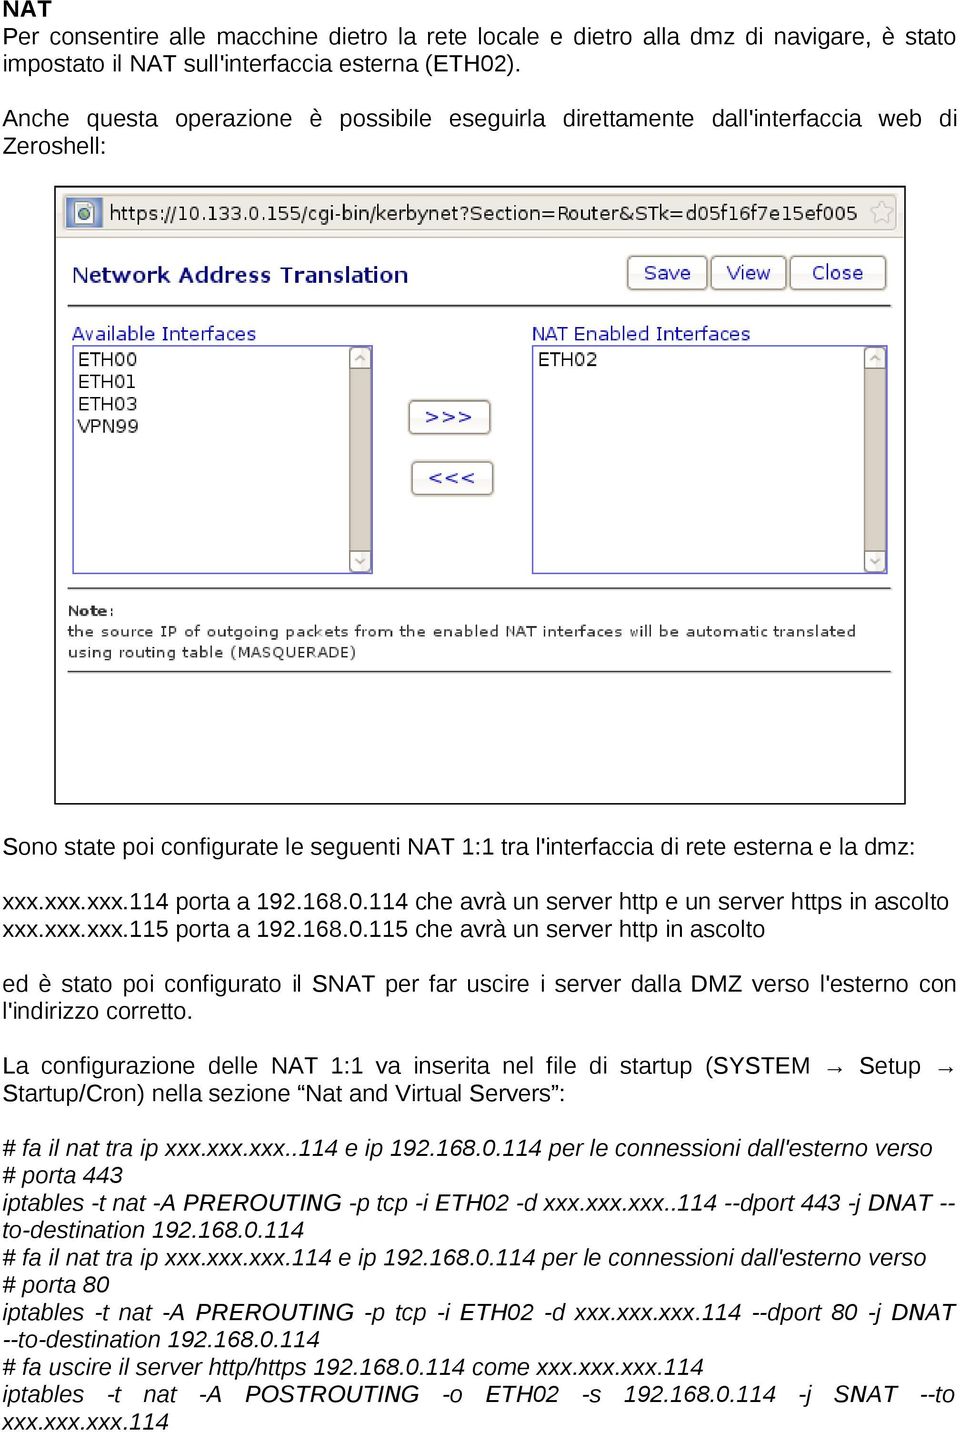 xxx.xxx.114 porta a 192.168.0.114 che avrà un server http e un server https in ascolto xxx.xxx.xxx.115 porta a 192.168.0.115 che avrà un server http in ascolto ed è stato poi configurato il SNAT per far uscire i server dalla DMZ verso l'esterno con l'indirizzo corretto.